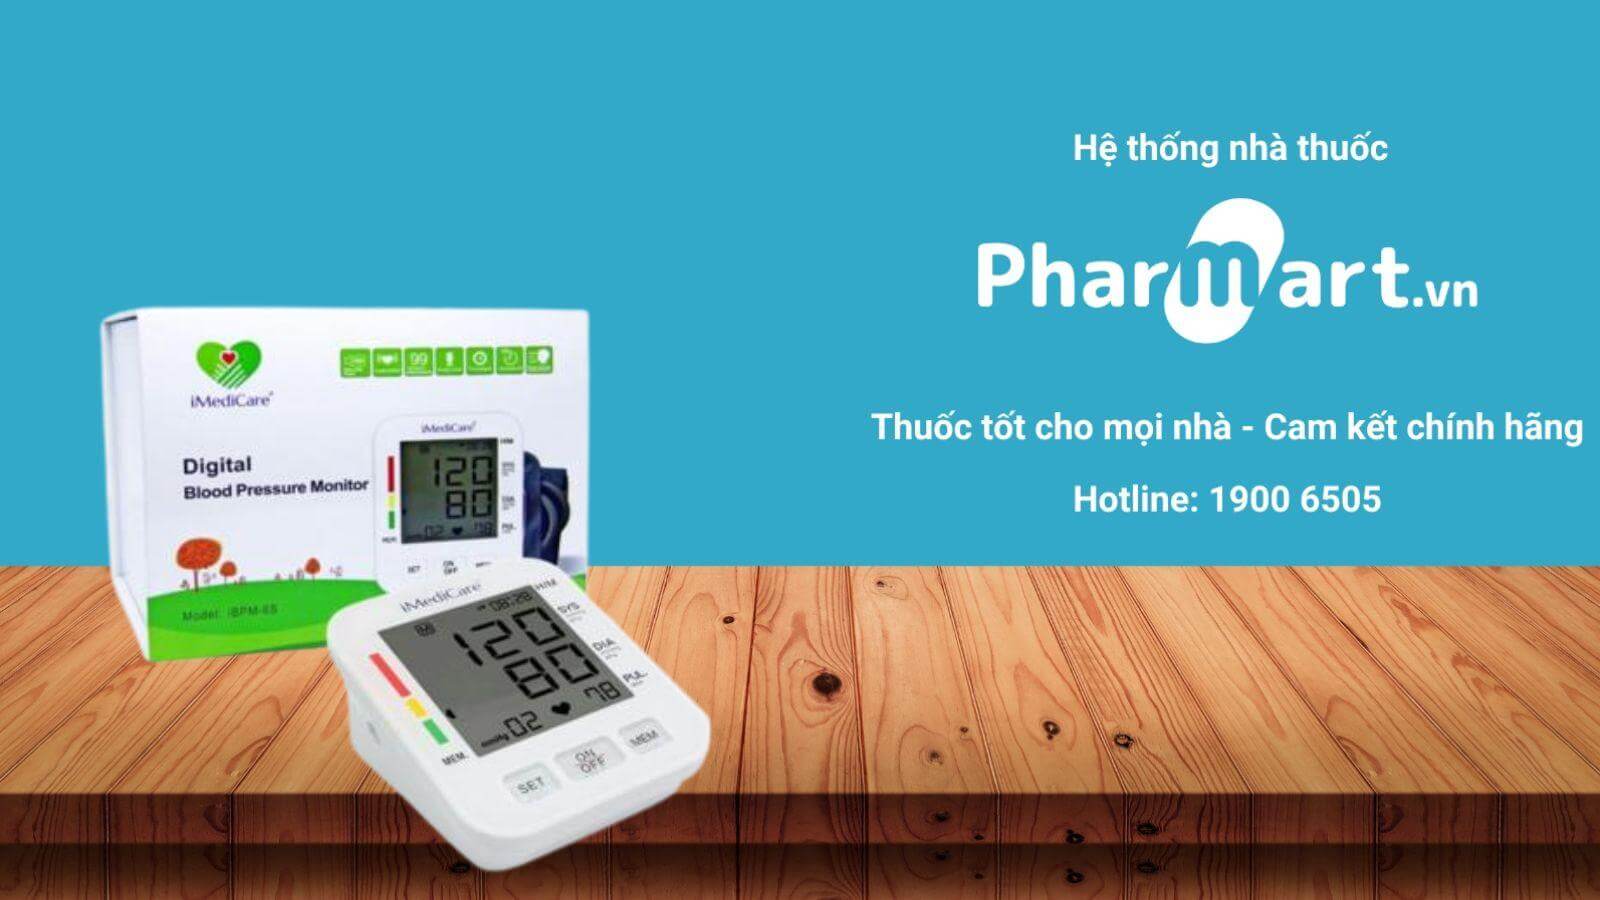 Liên hệ Hệ thống nhà thuốc Pharmart để đảm bảo sản phẩm chính hãng